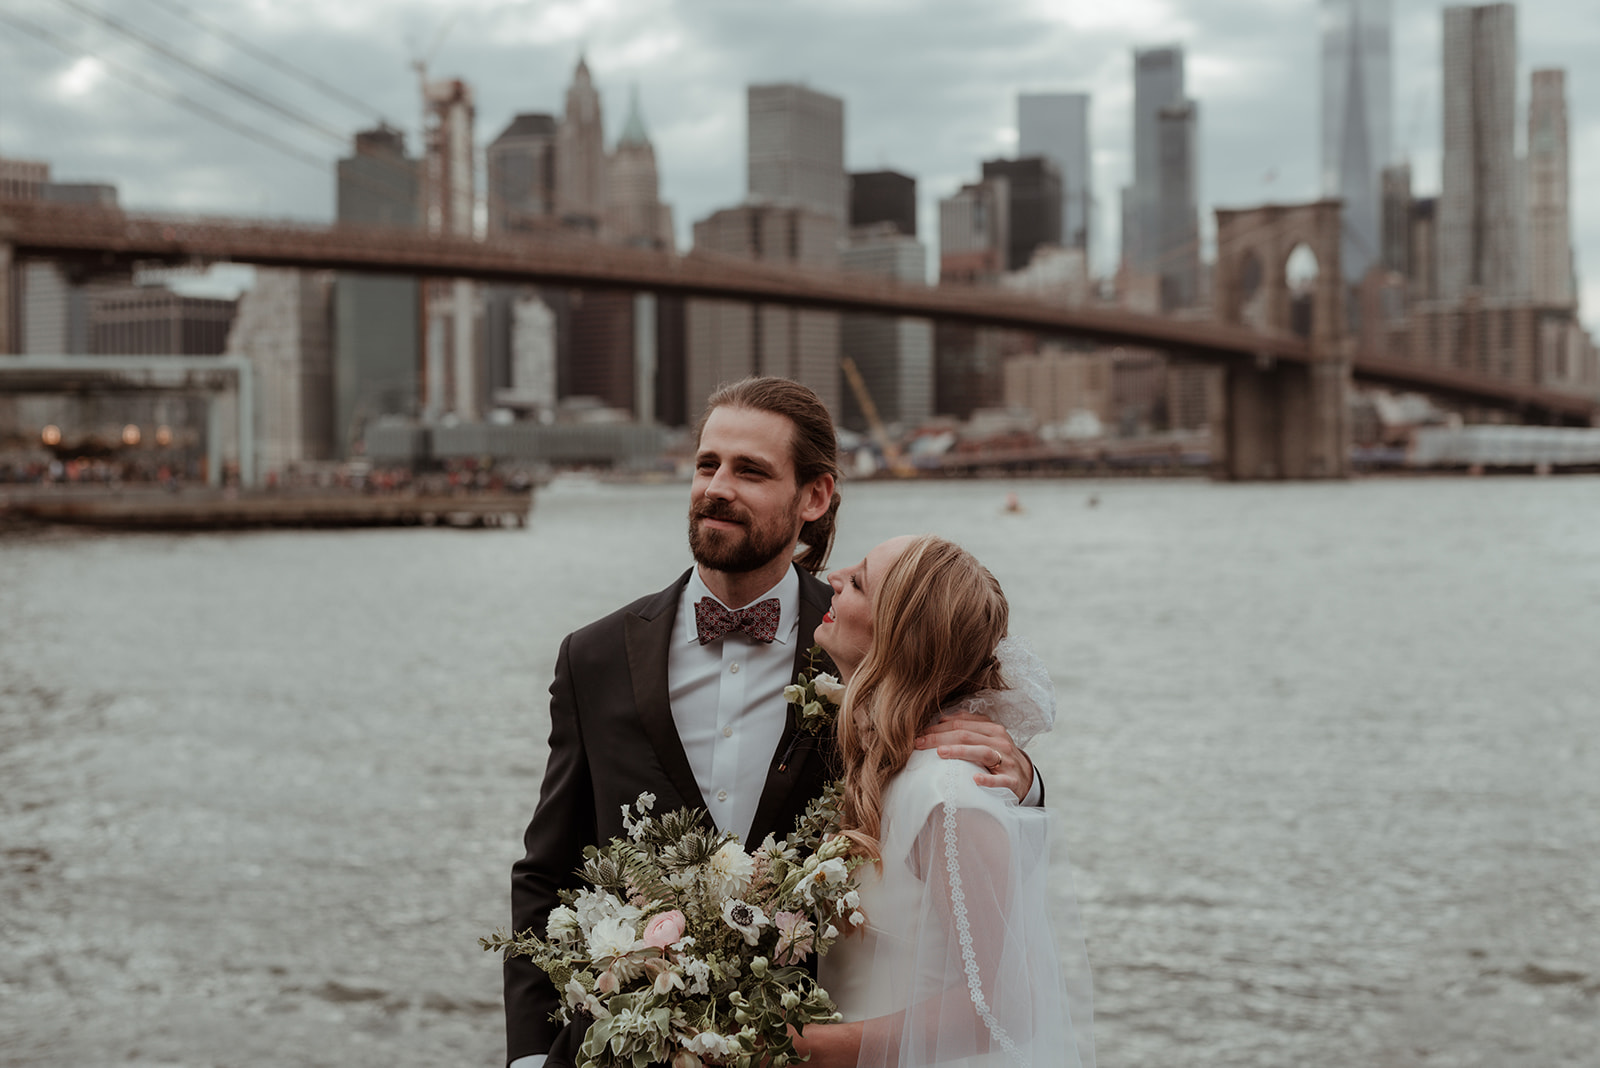 Brooklyn Bridge wedding captured by Glasgow wedding photographer Betty jnr co modern editorial